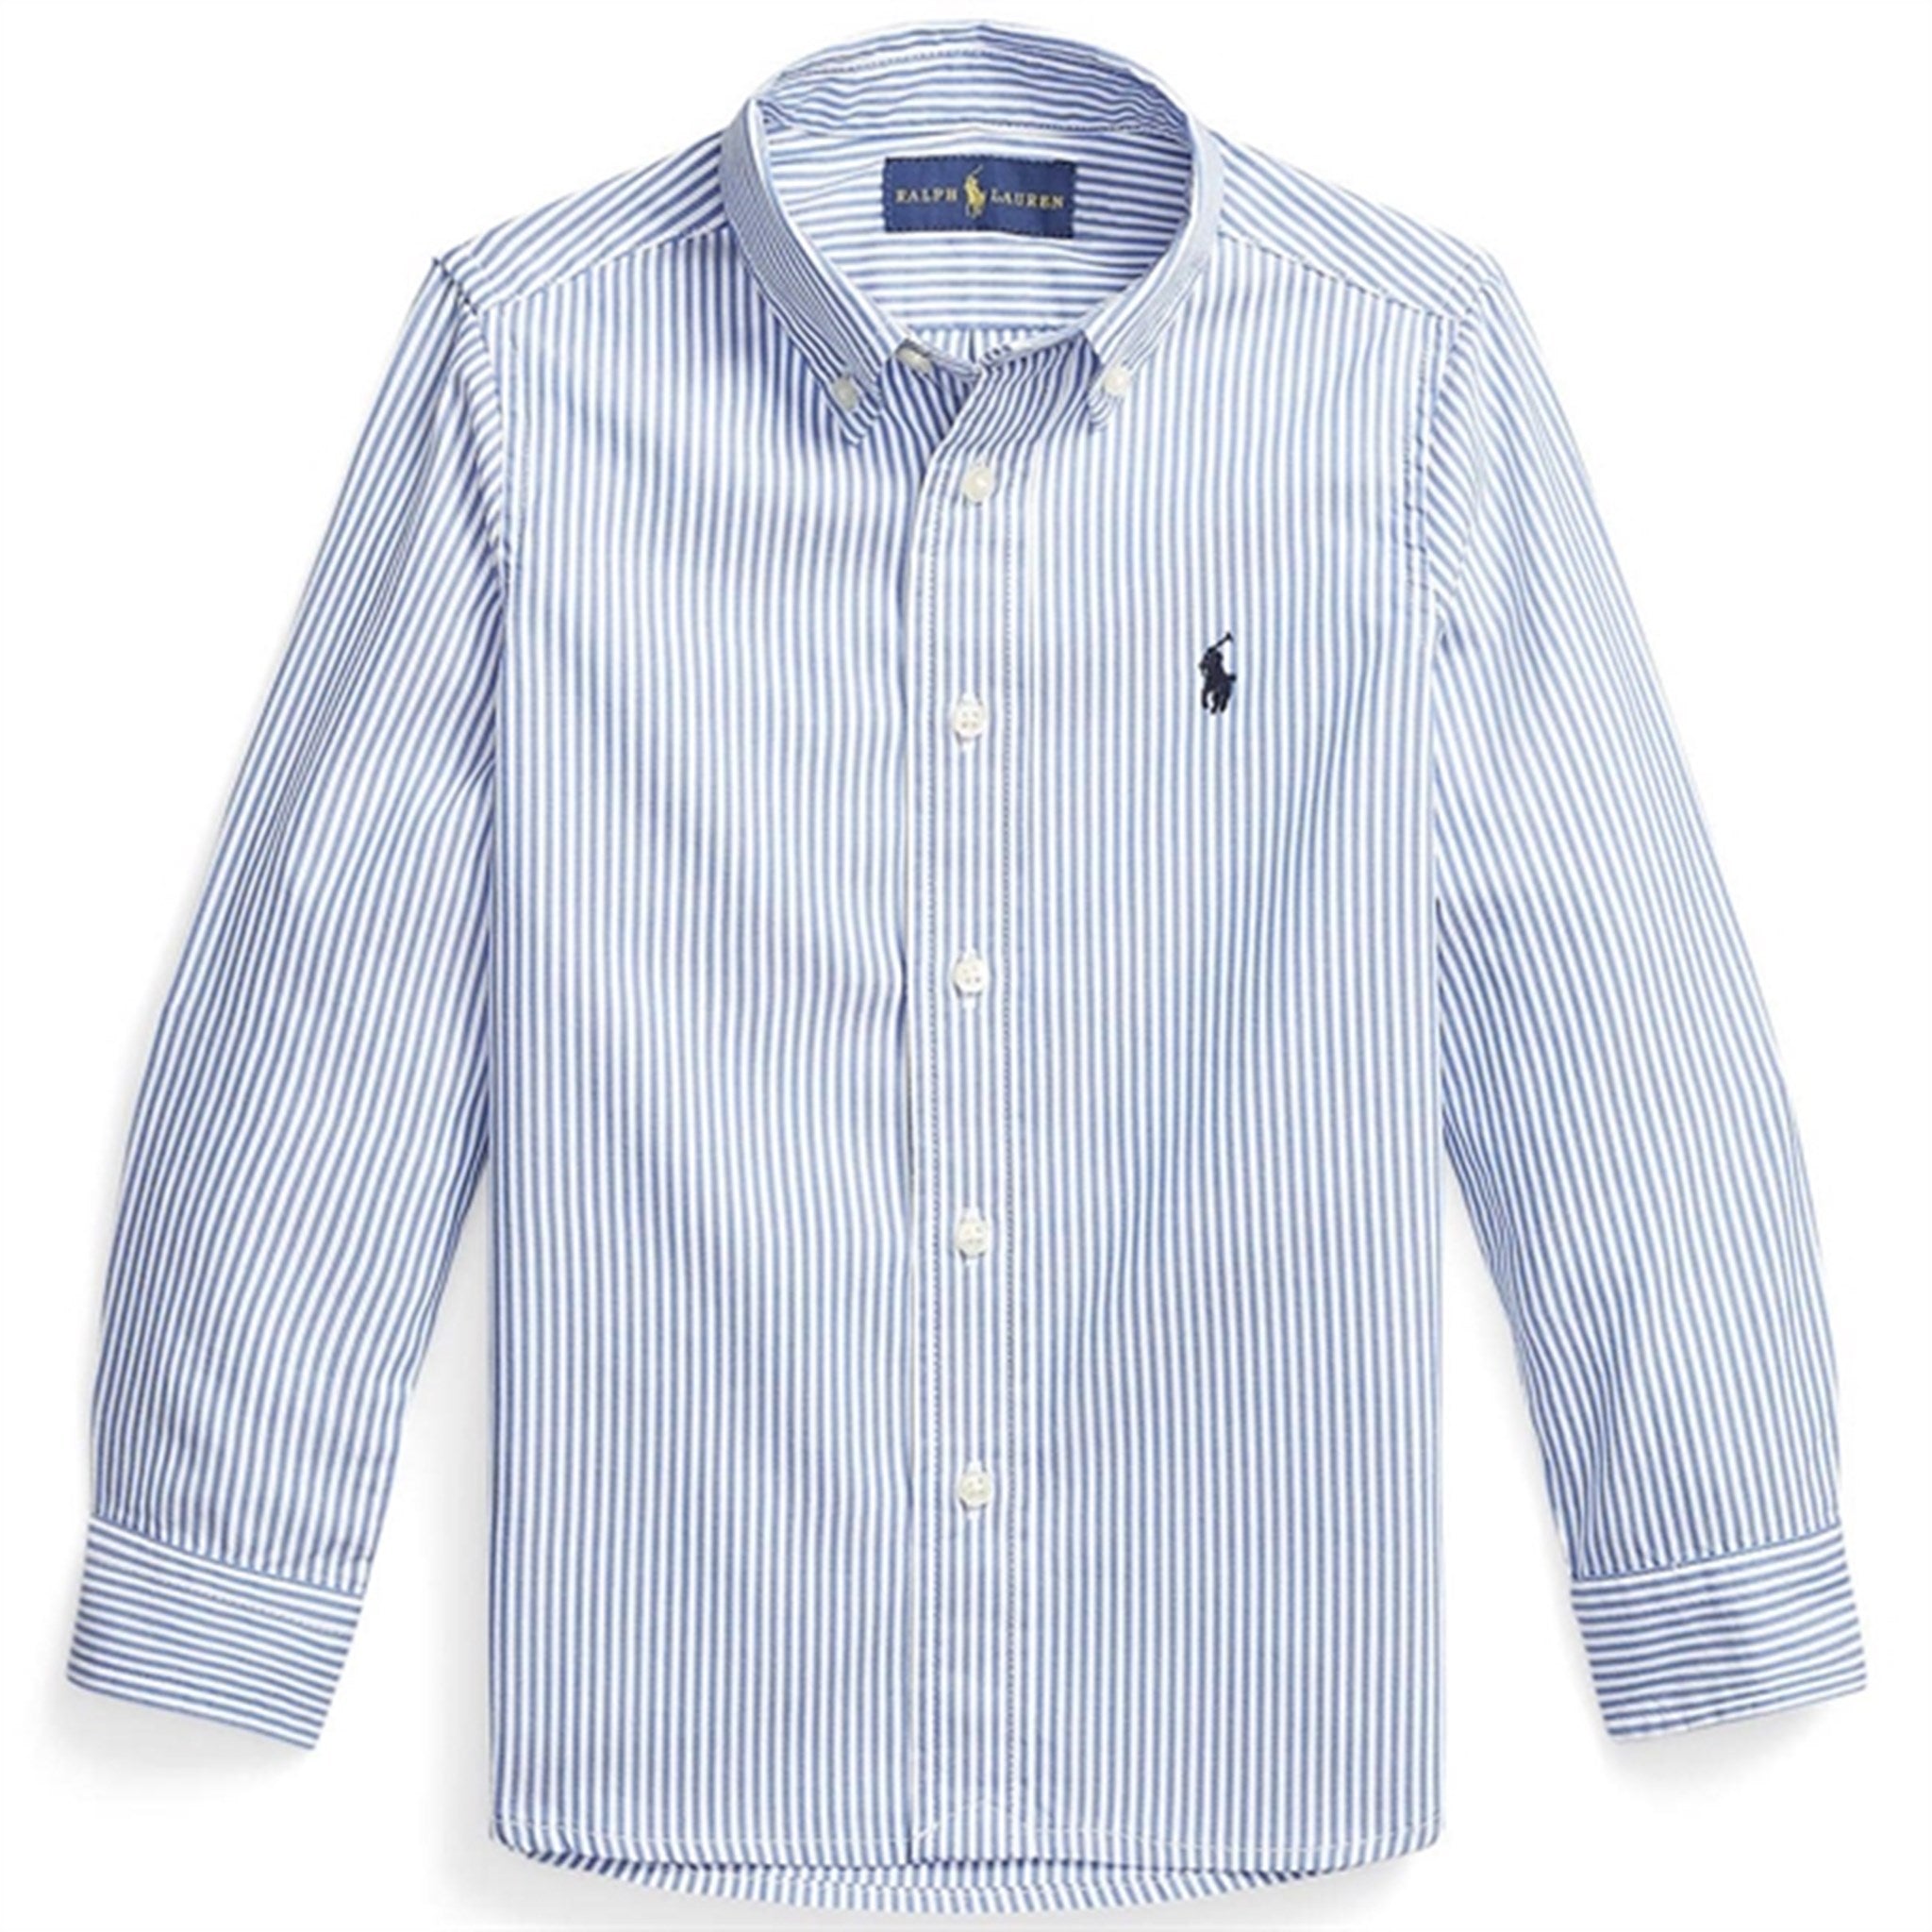 Polo Ralph Lauren Boy Long Sleeved Shirt BSR Blue/White